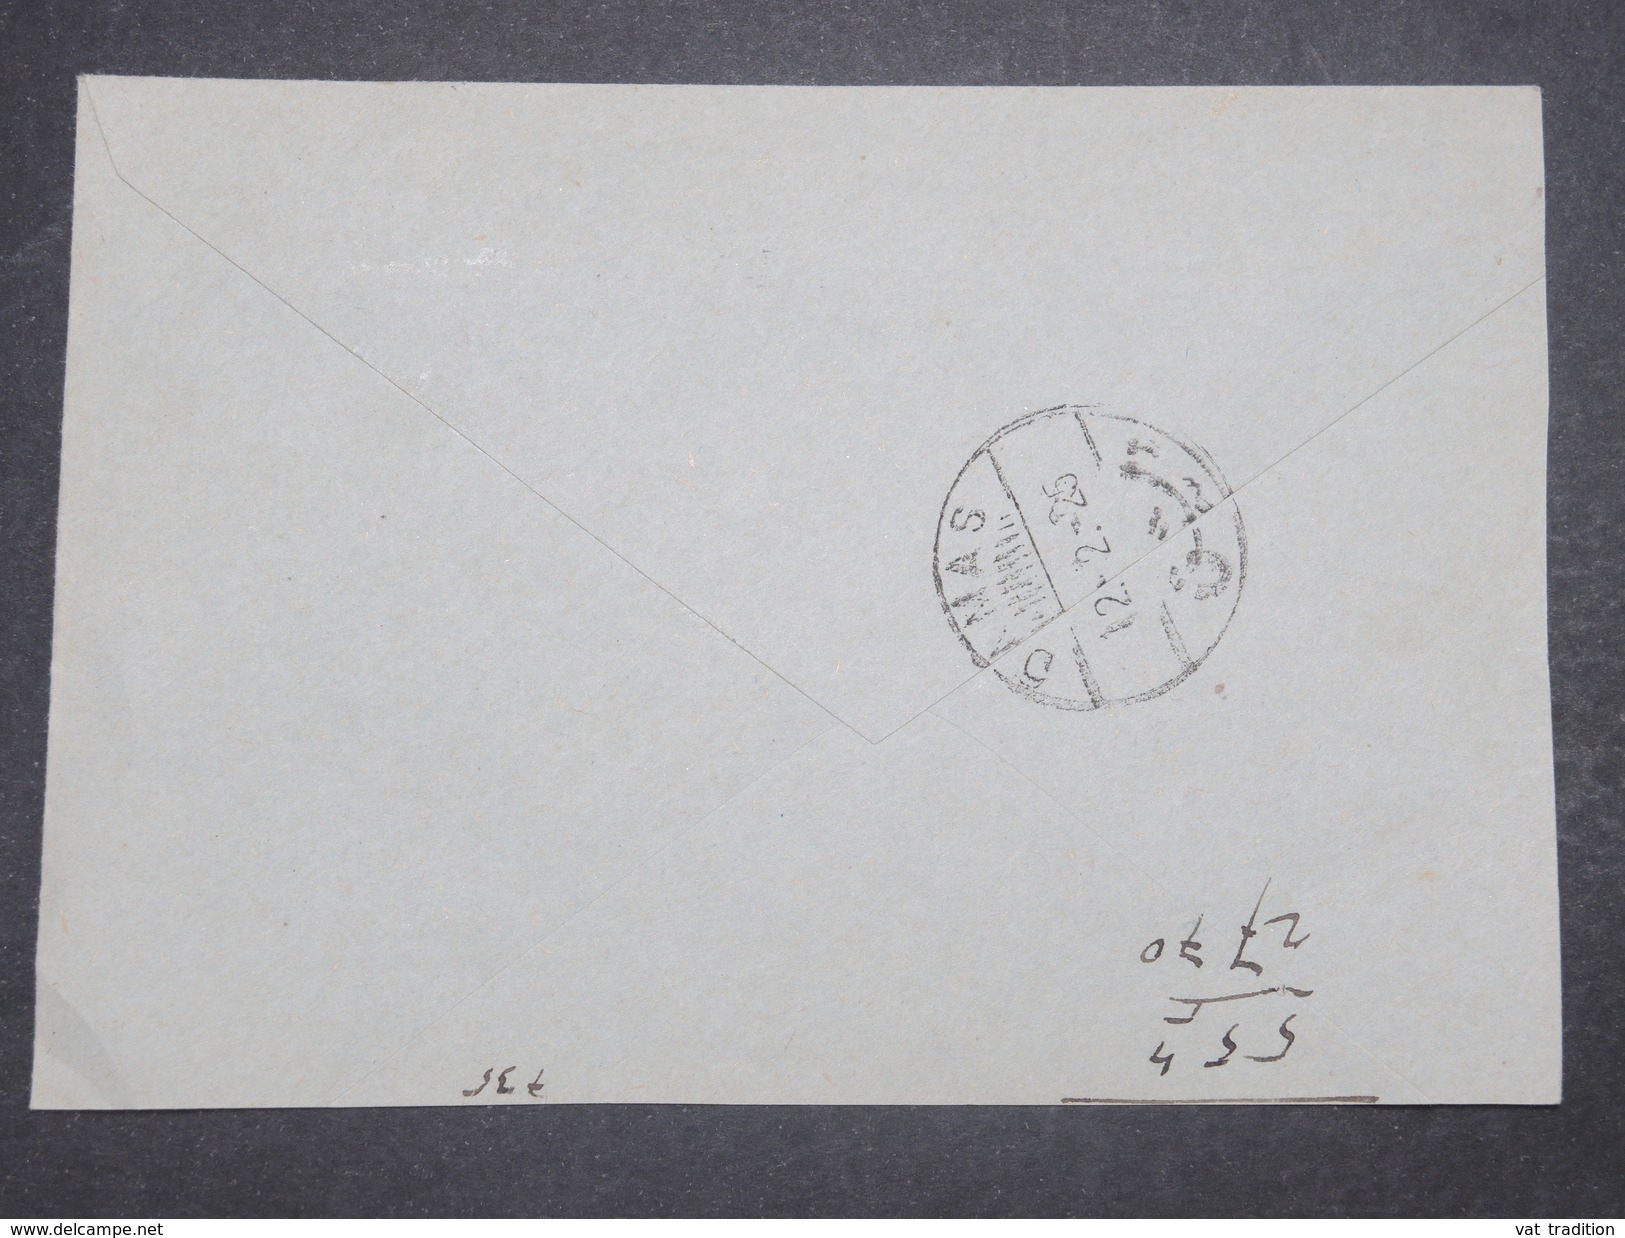 FRANCE / GRAND LIBAN - Enveloppe Commerciale De Beyrouth Pour Damas En 1925 , Affranchissement Merson Surchargé - L 9730 - Storia Postale